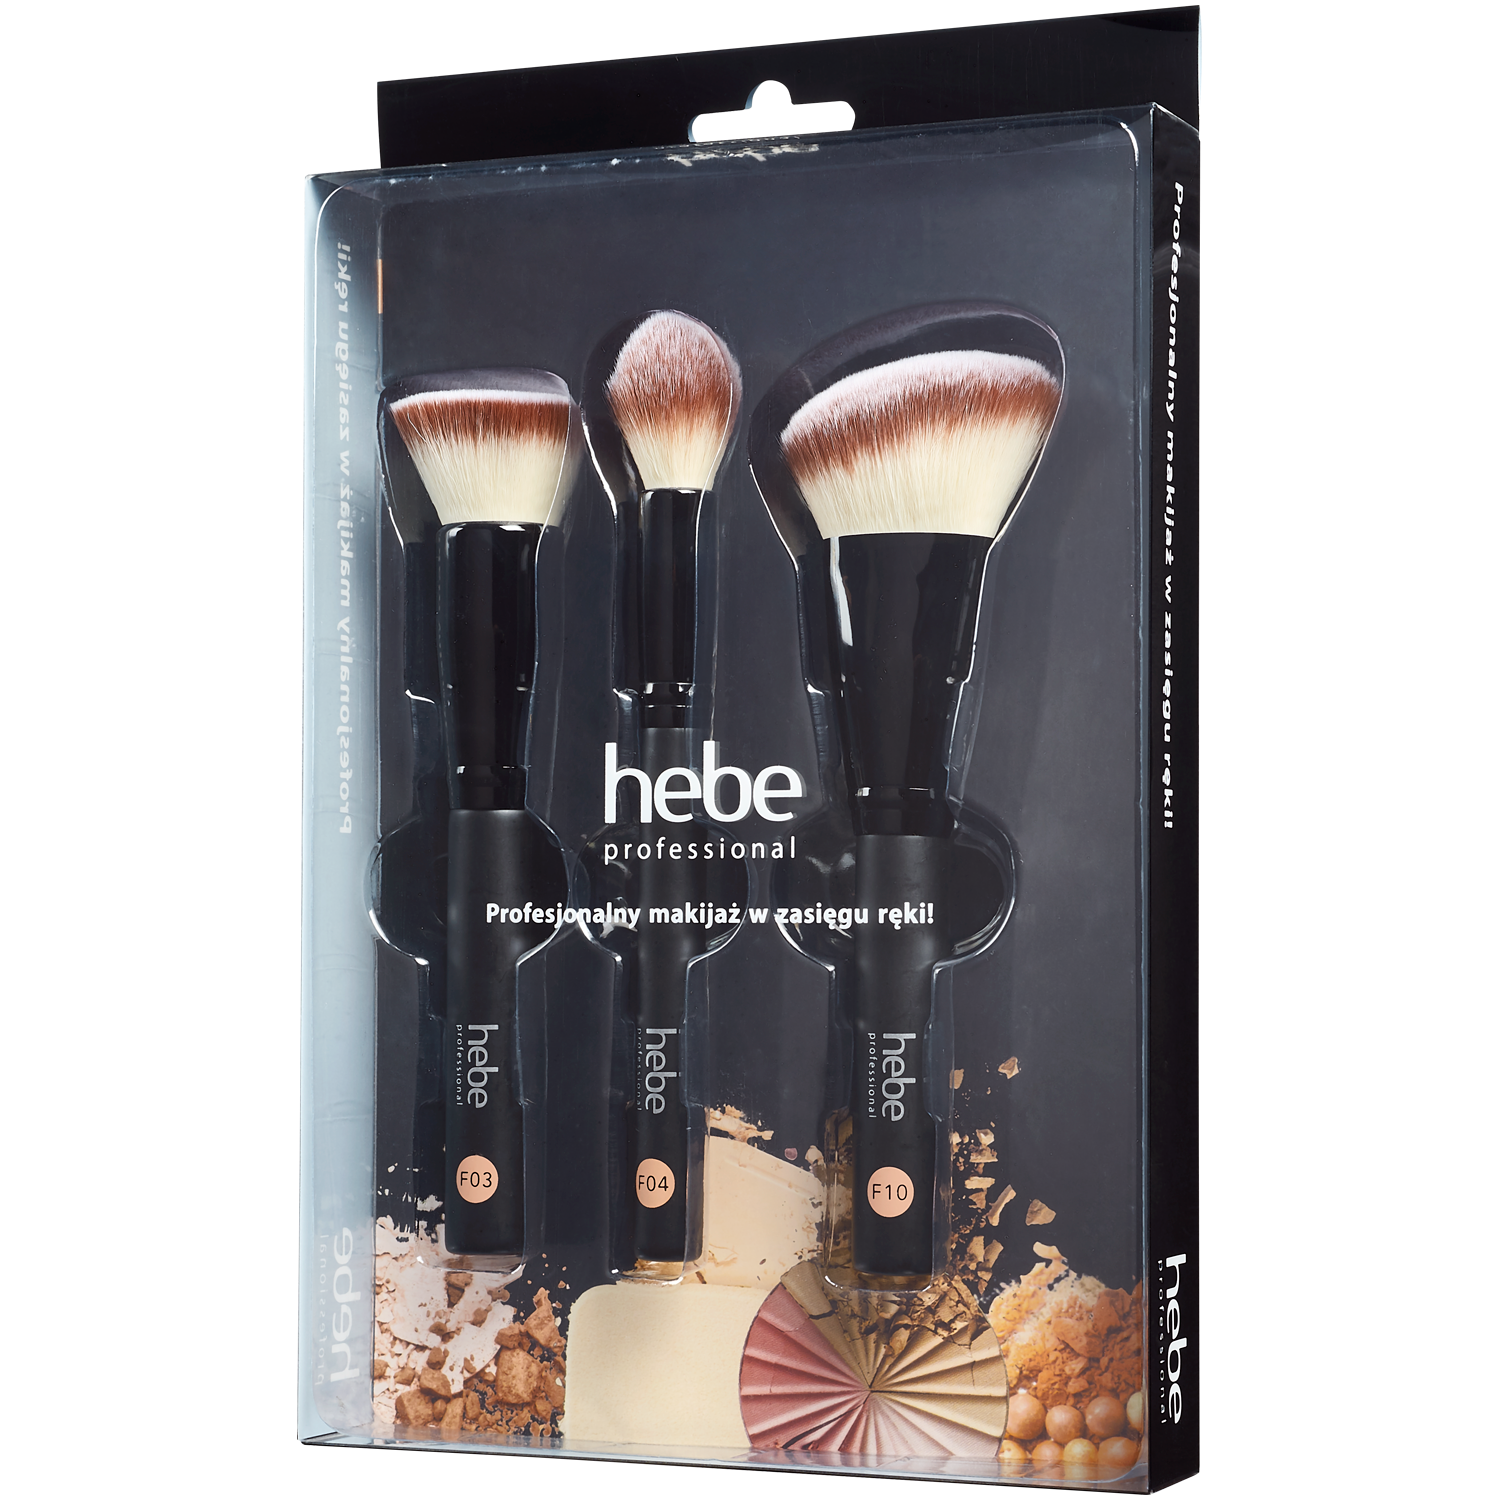 Hebe Professional zestaw: pędzle do makijażu, 3 szt. | hebe.pl